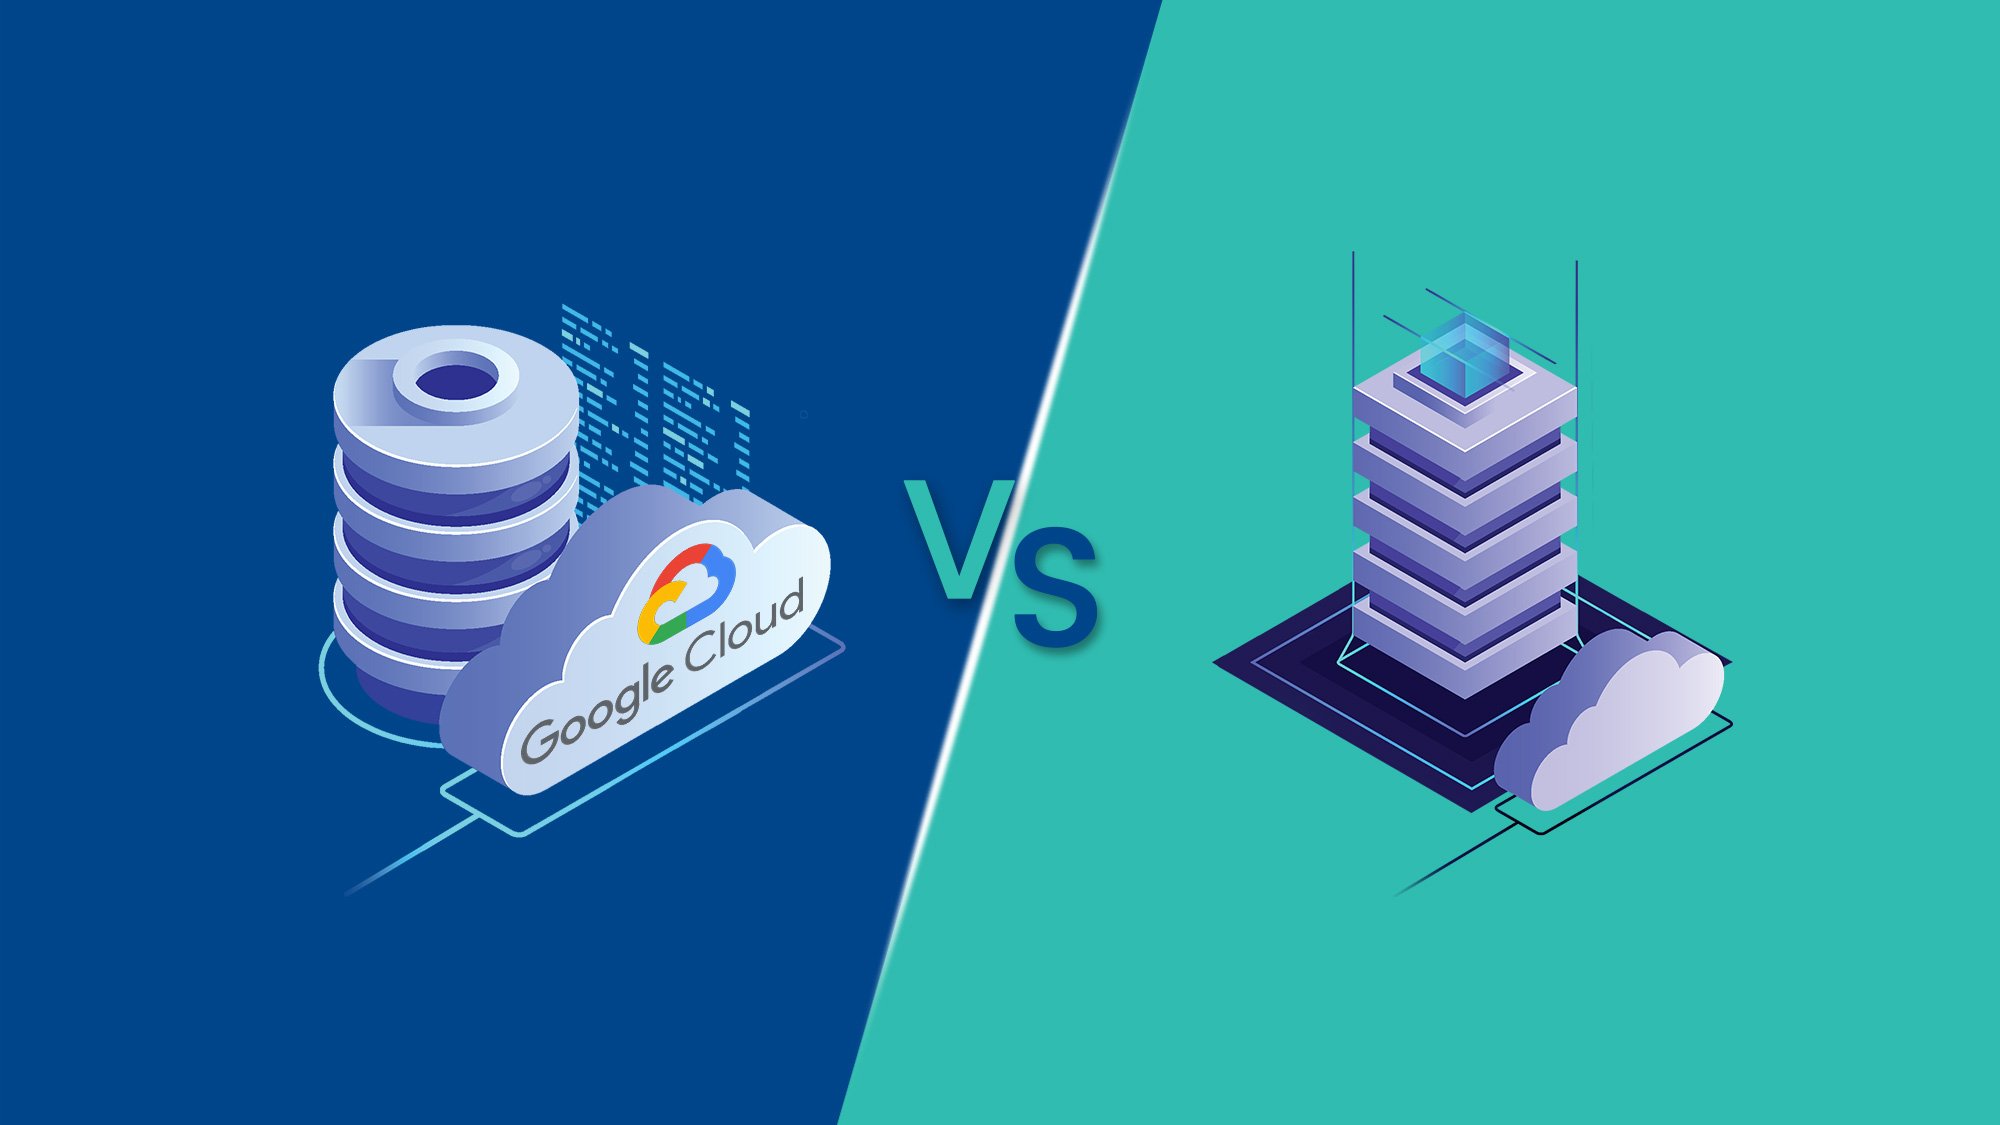 Cloud-showdown-Google-cloud-platform-Va-competitors